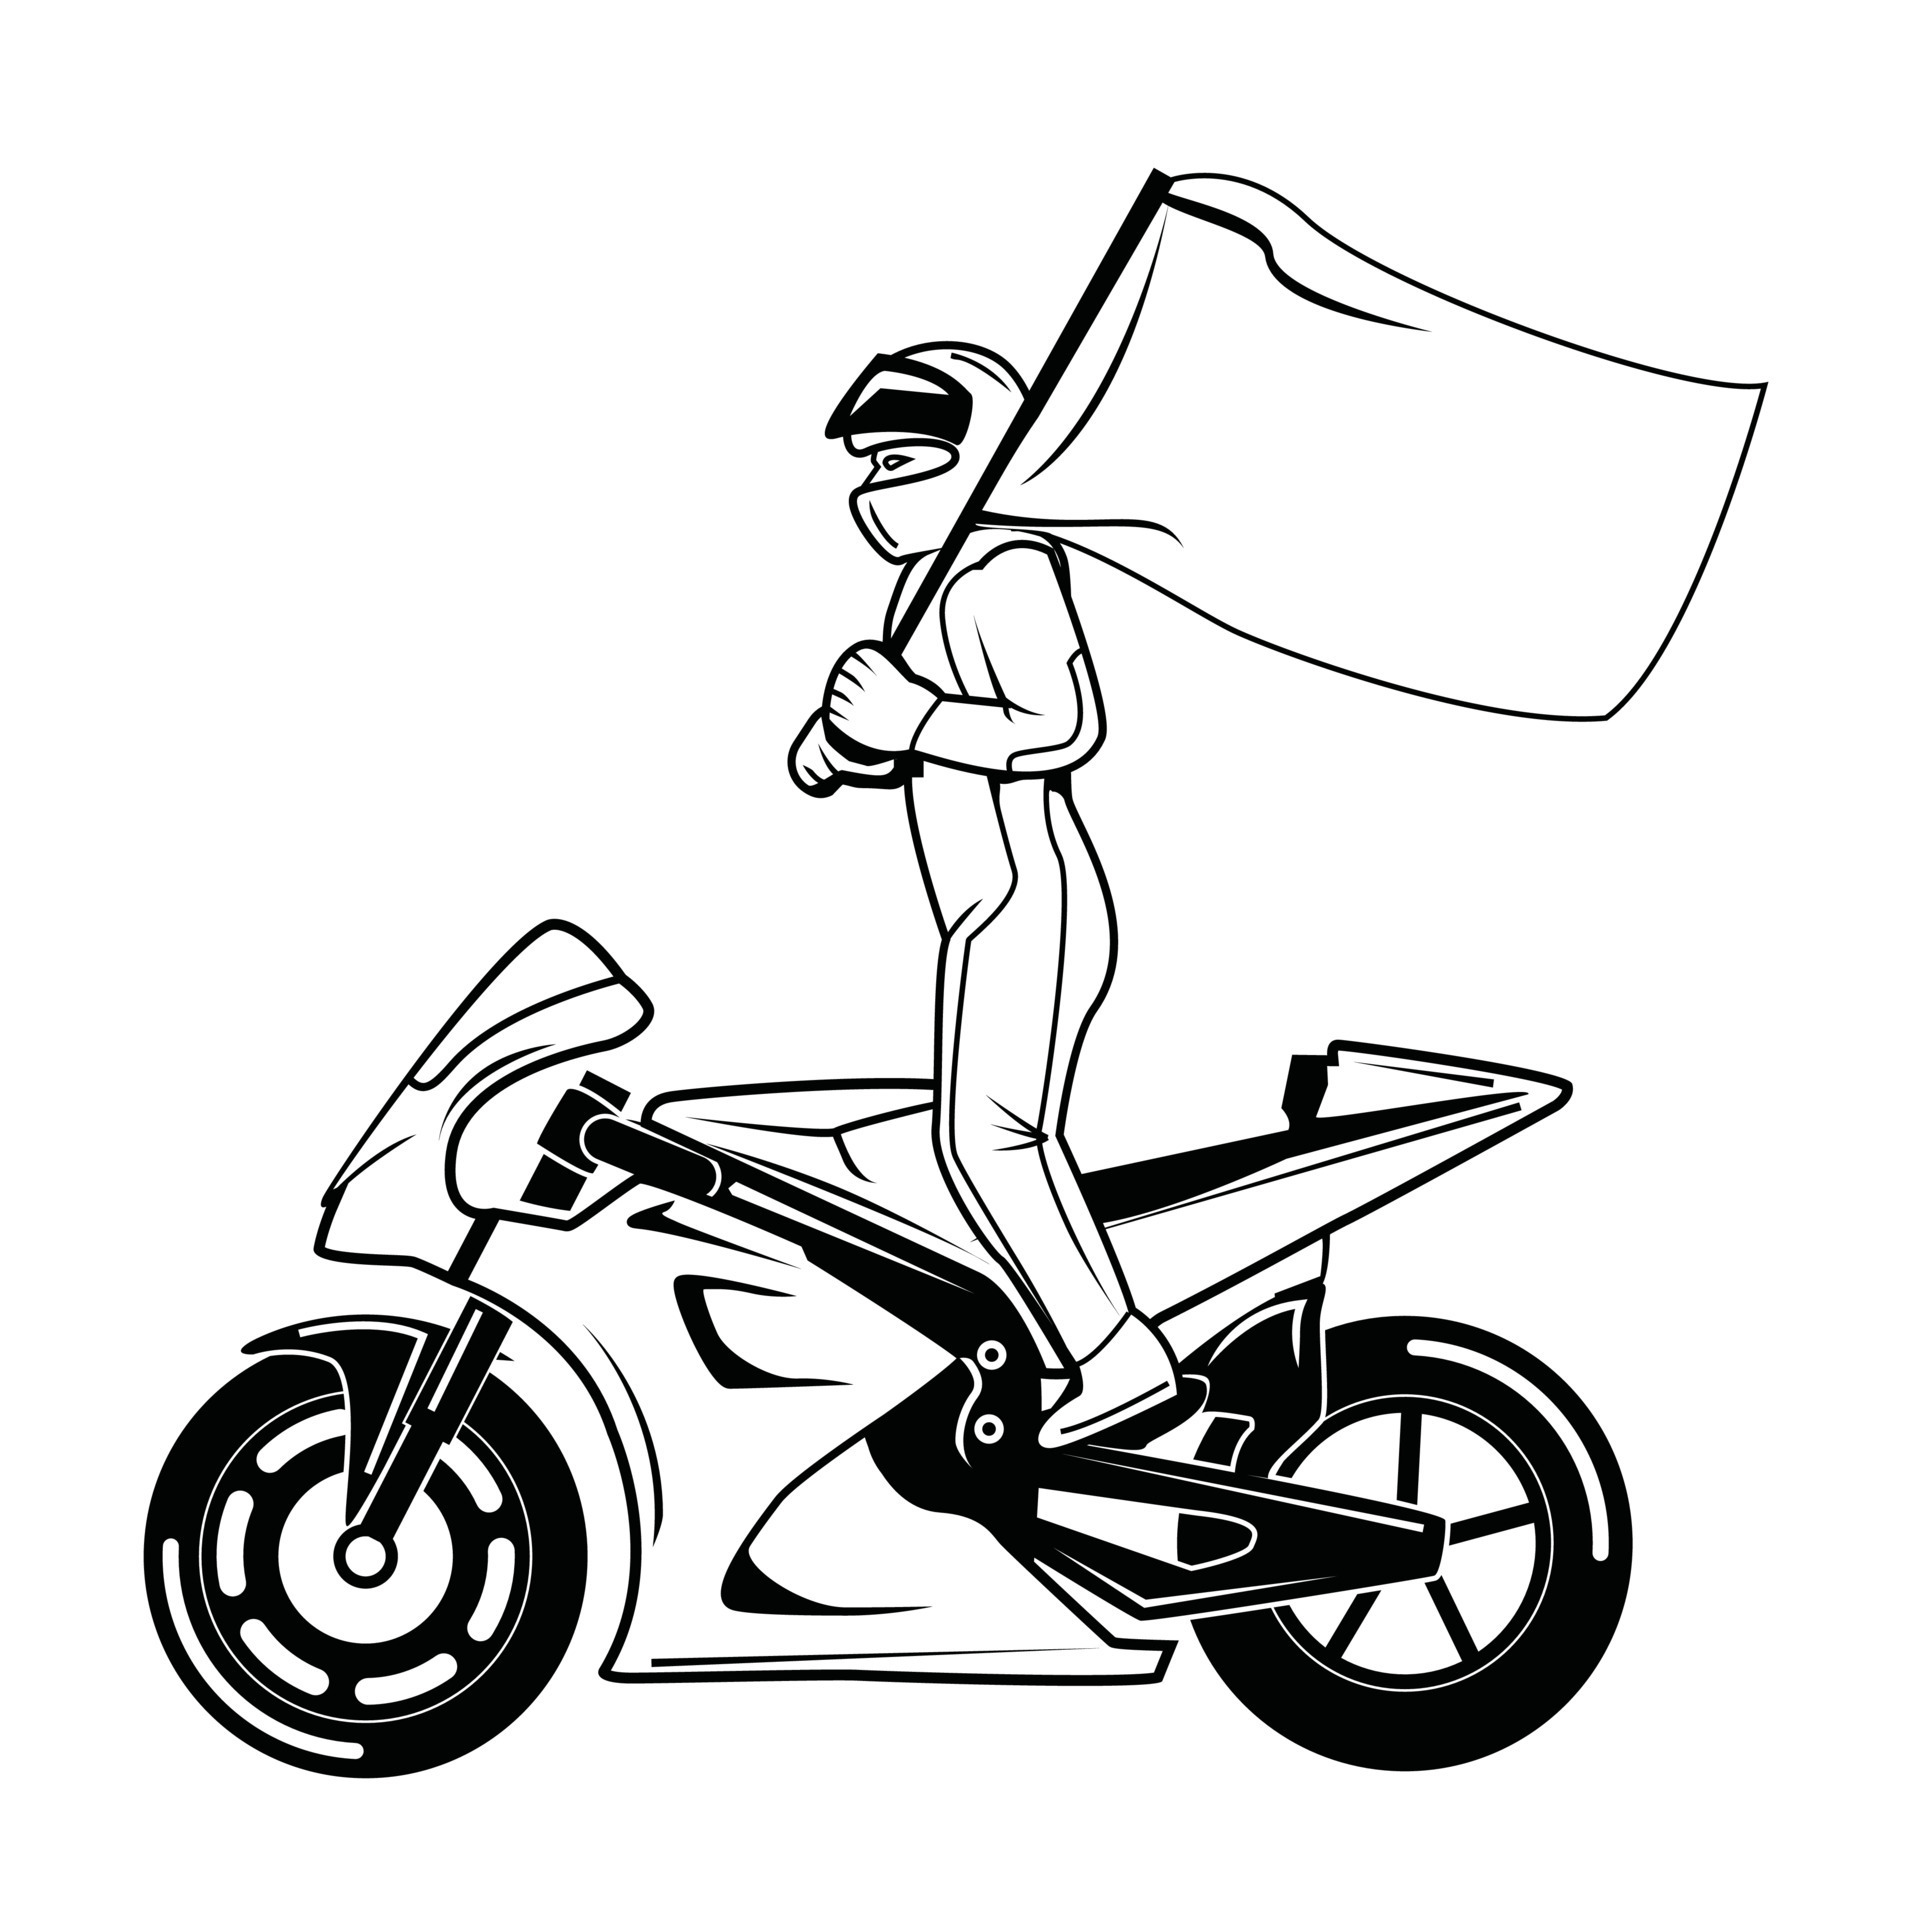 corrida de moto com bandeira preto e branco 14534614 Vetor no Vecteezy